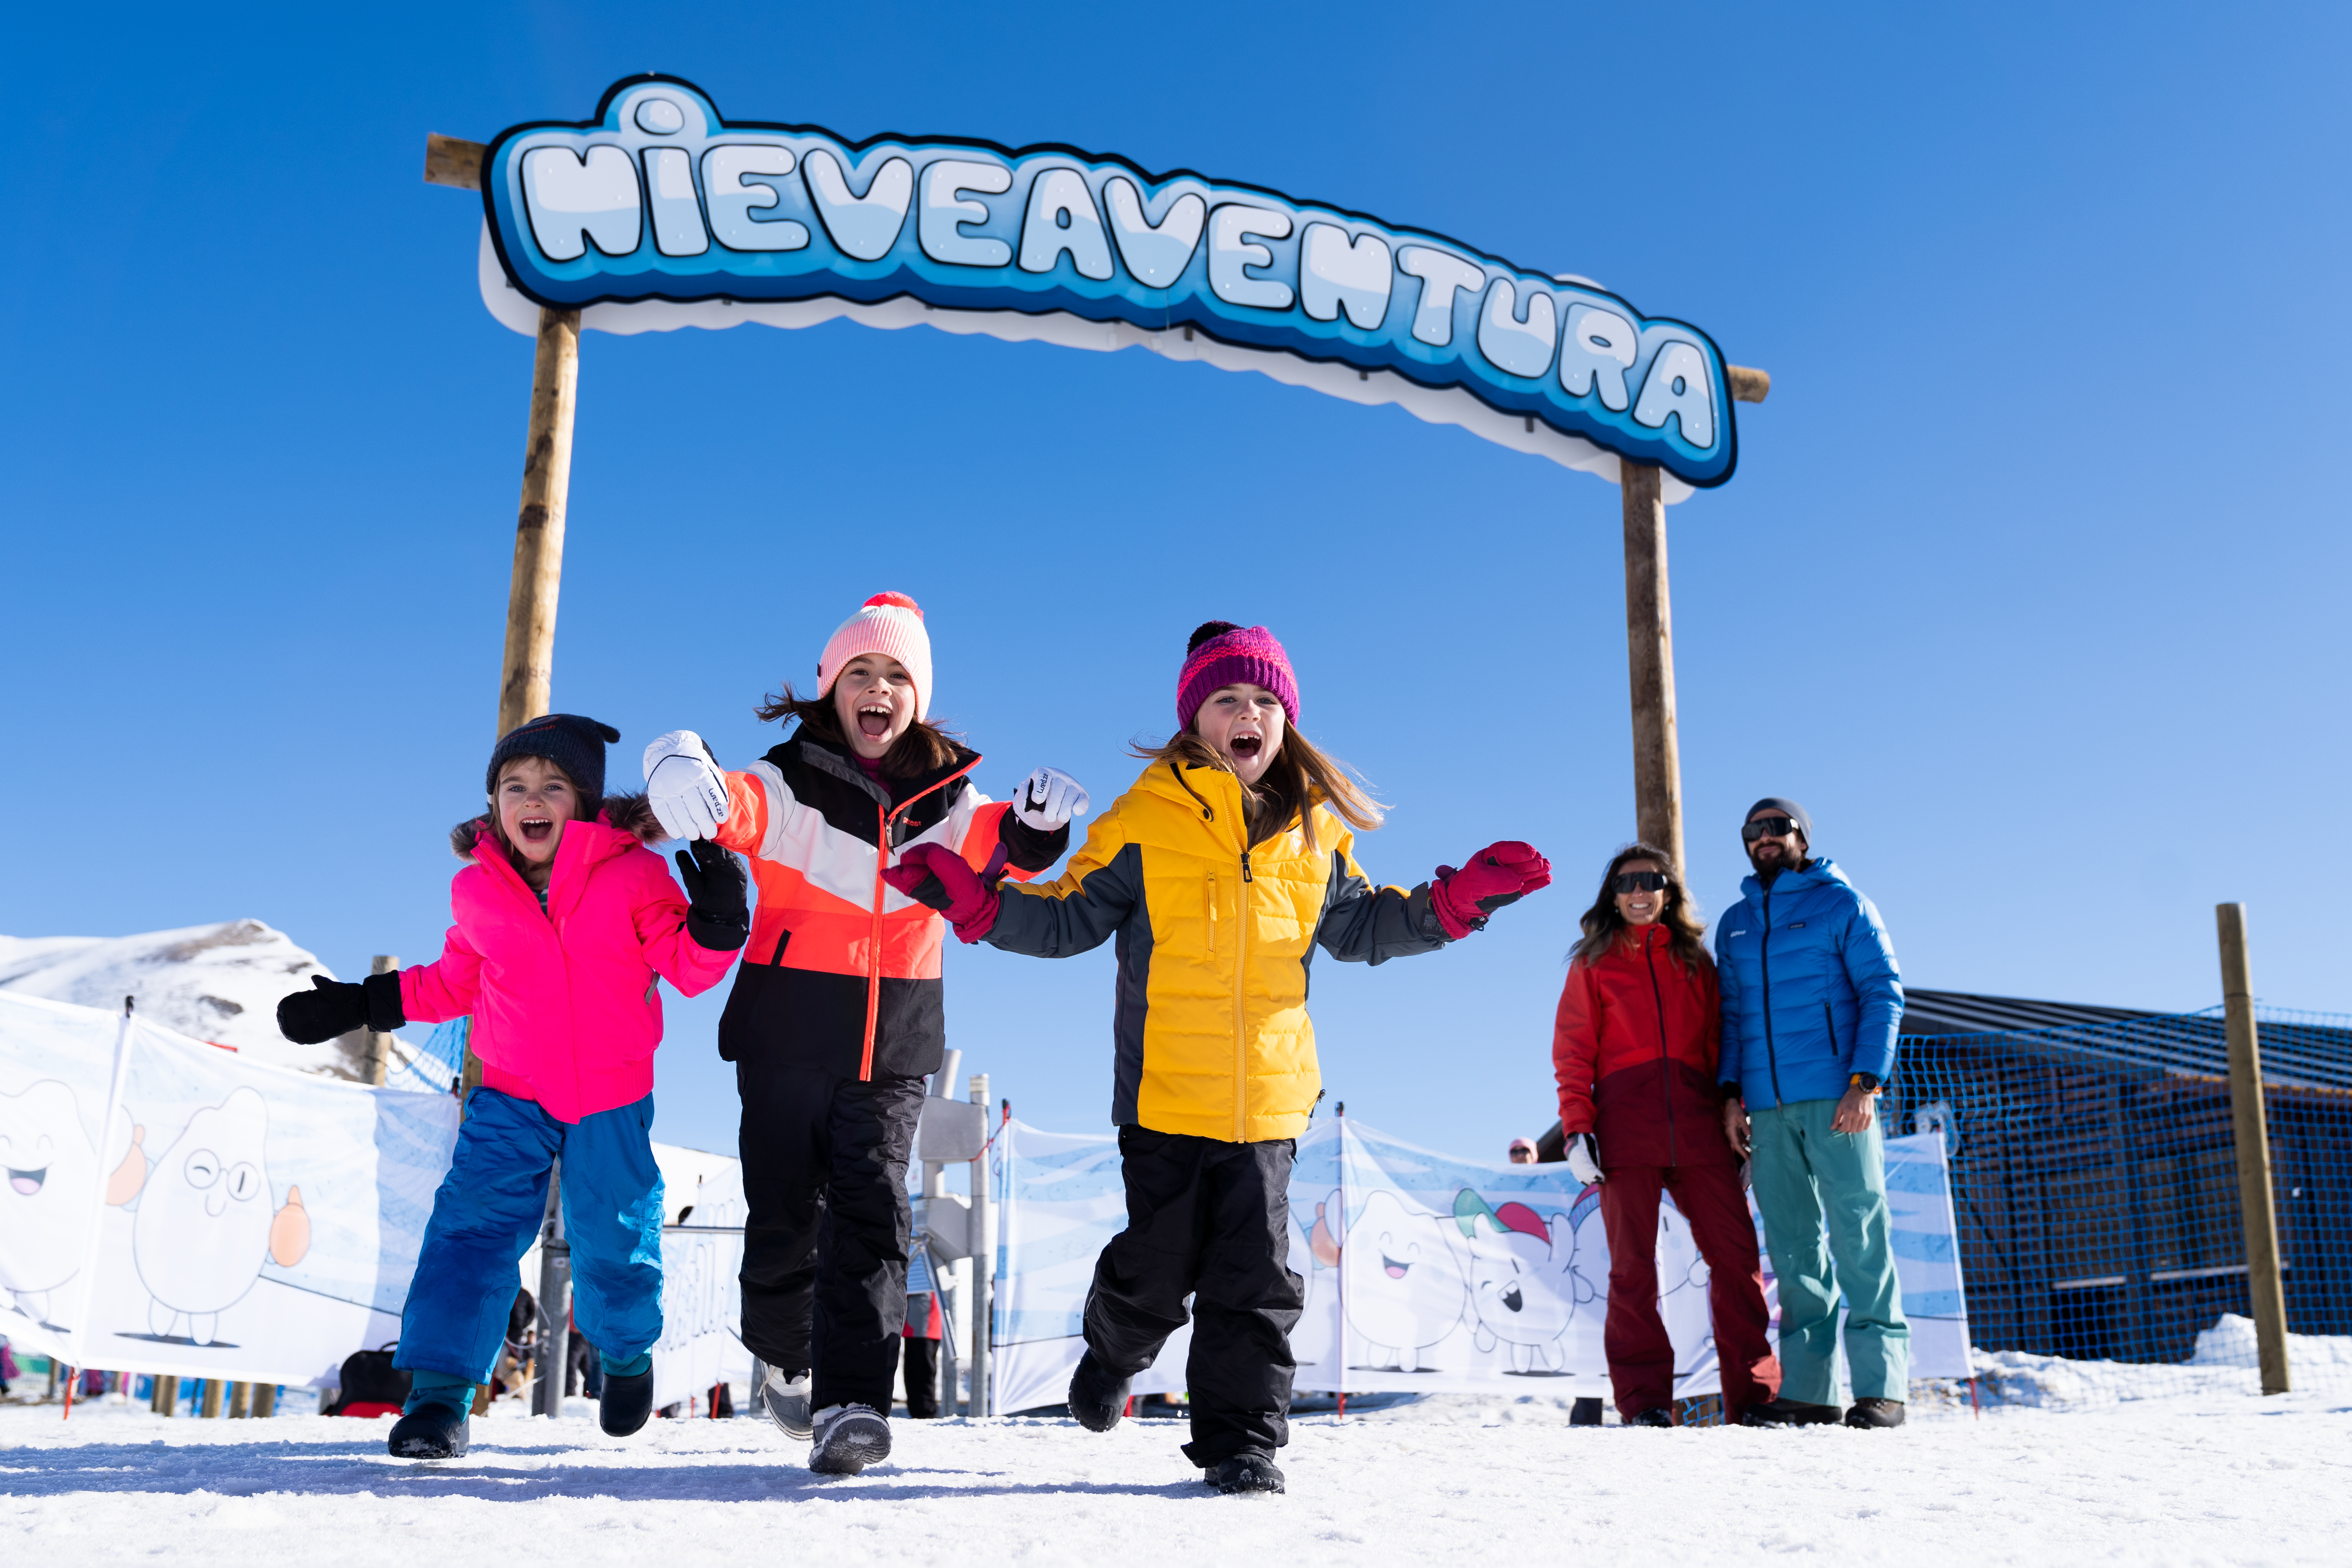 Nieveaventura | Aramón | Estación de esquí Formigal-Panticosa